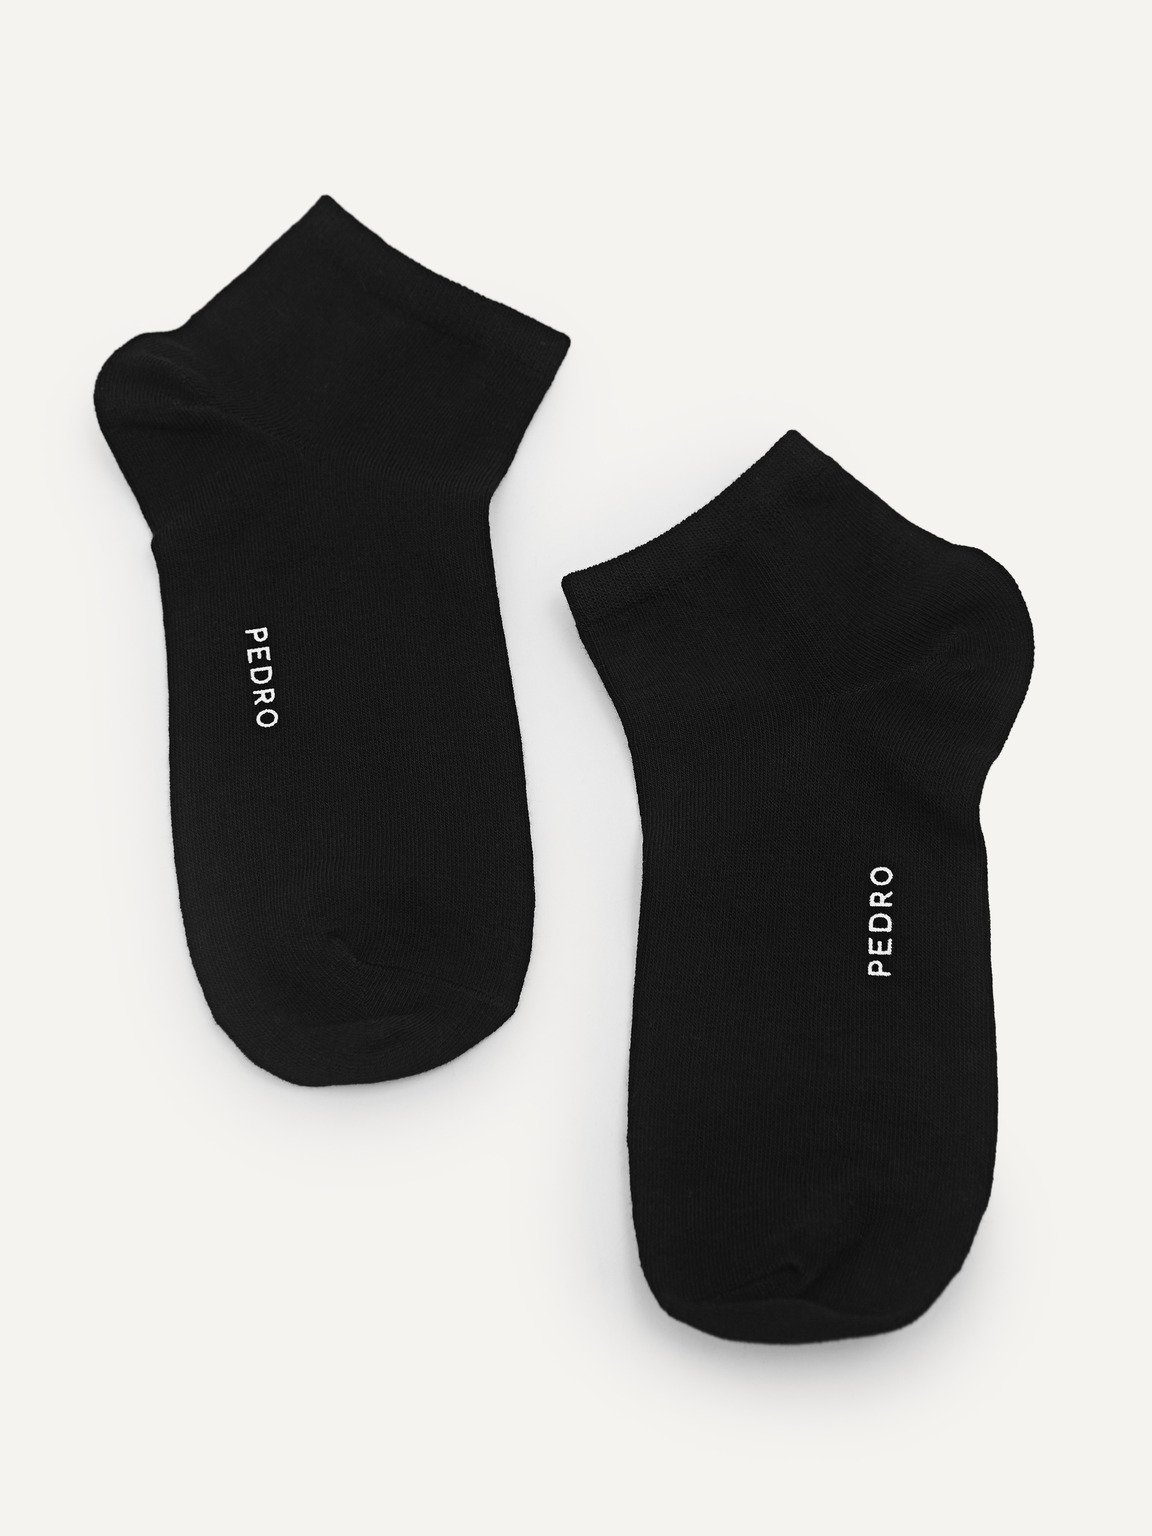 Women's Ankle Socks, Black